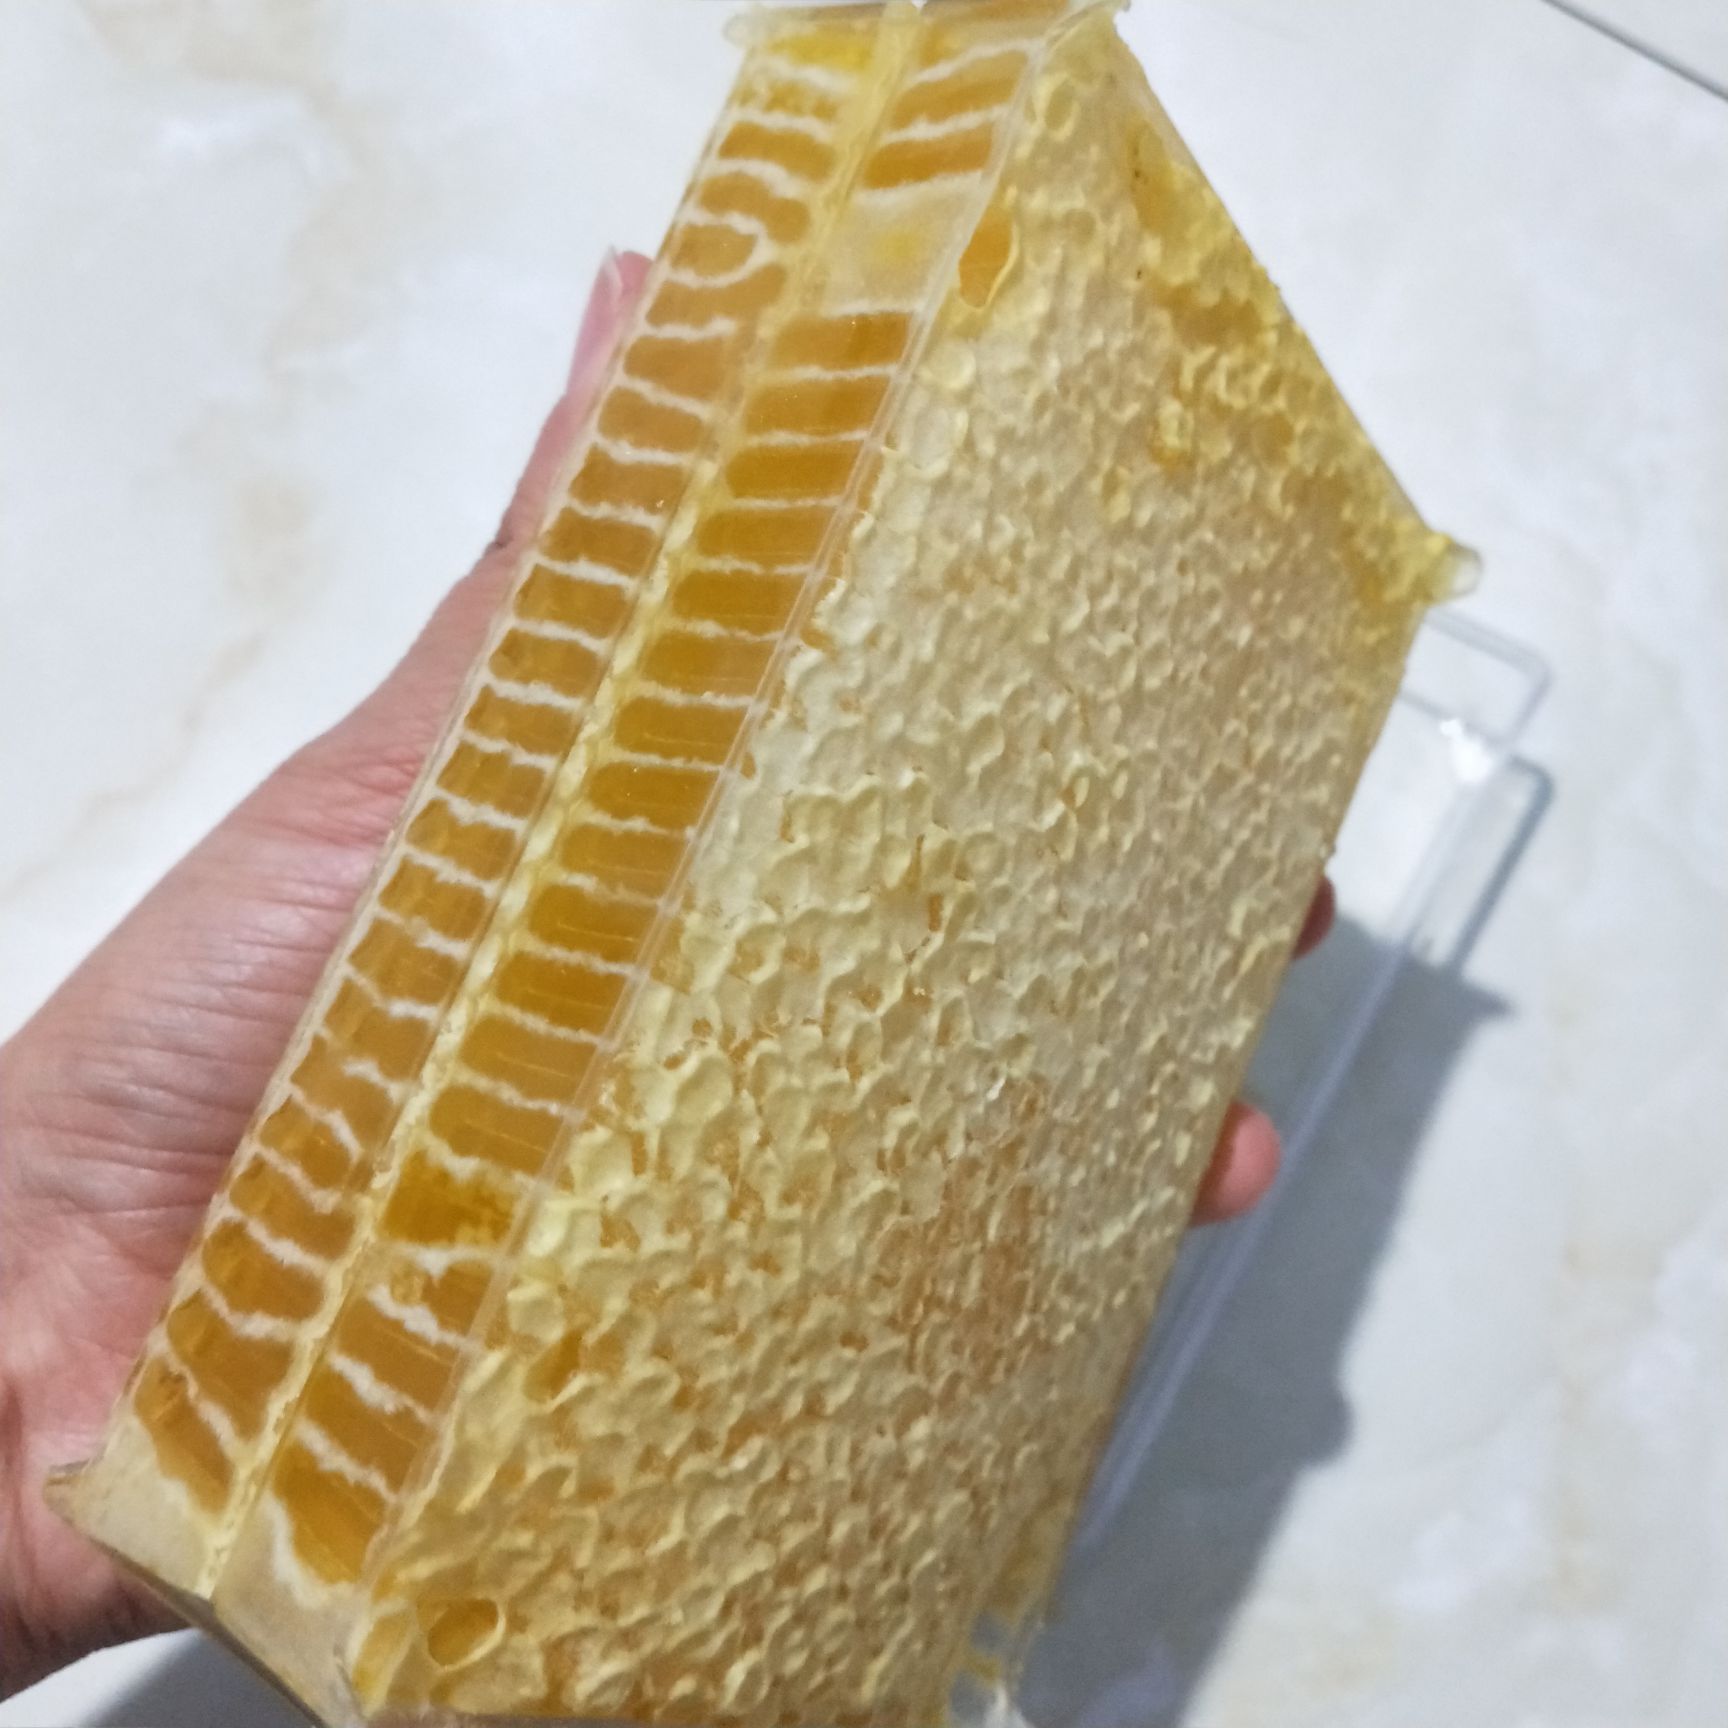 蜂巢蜜 可以嚼着吃的蜂蜜 无法造假的天然蜂巢蜜 甜而不腻